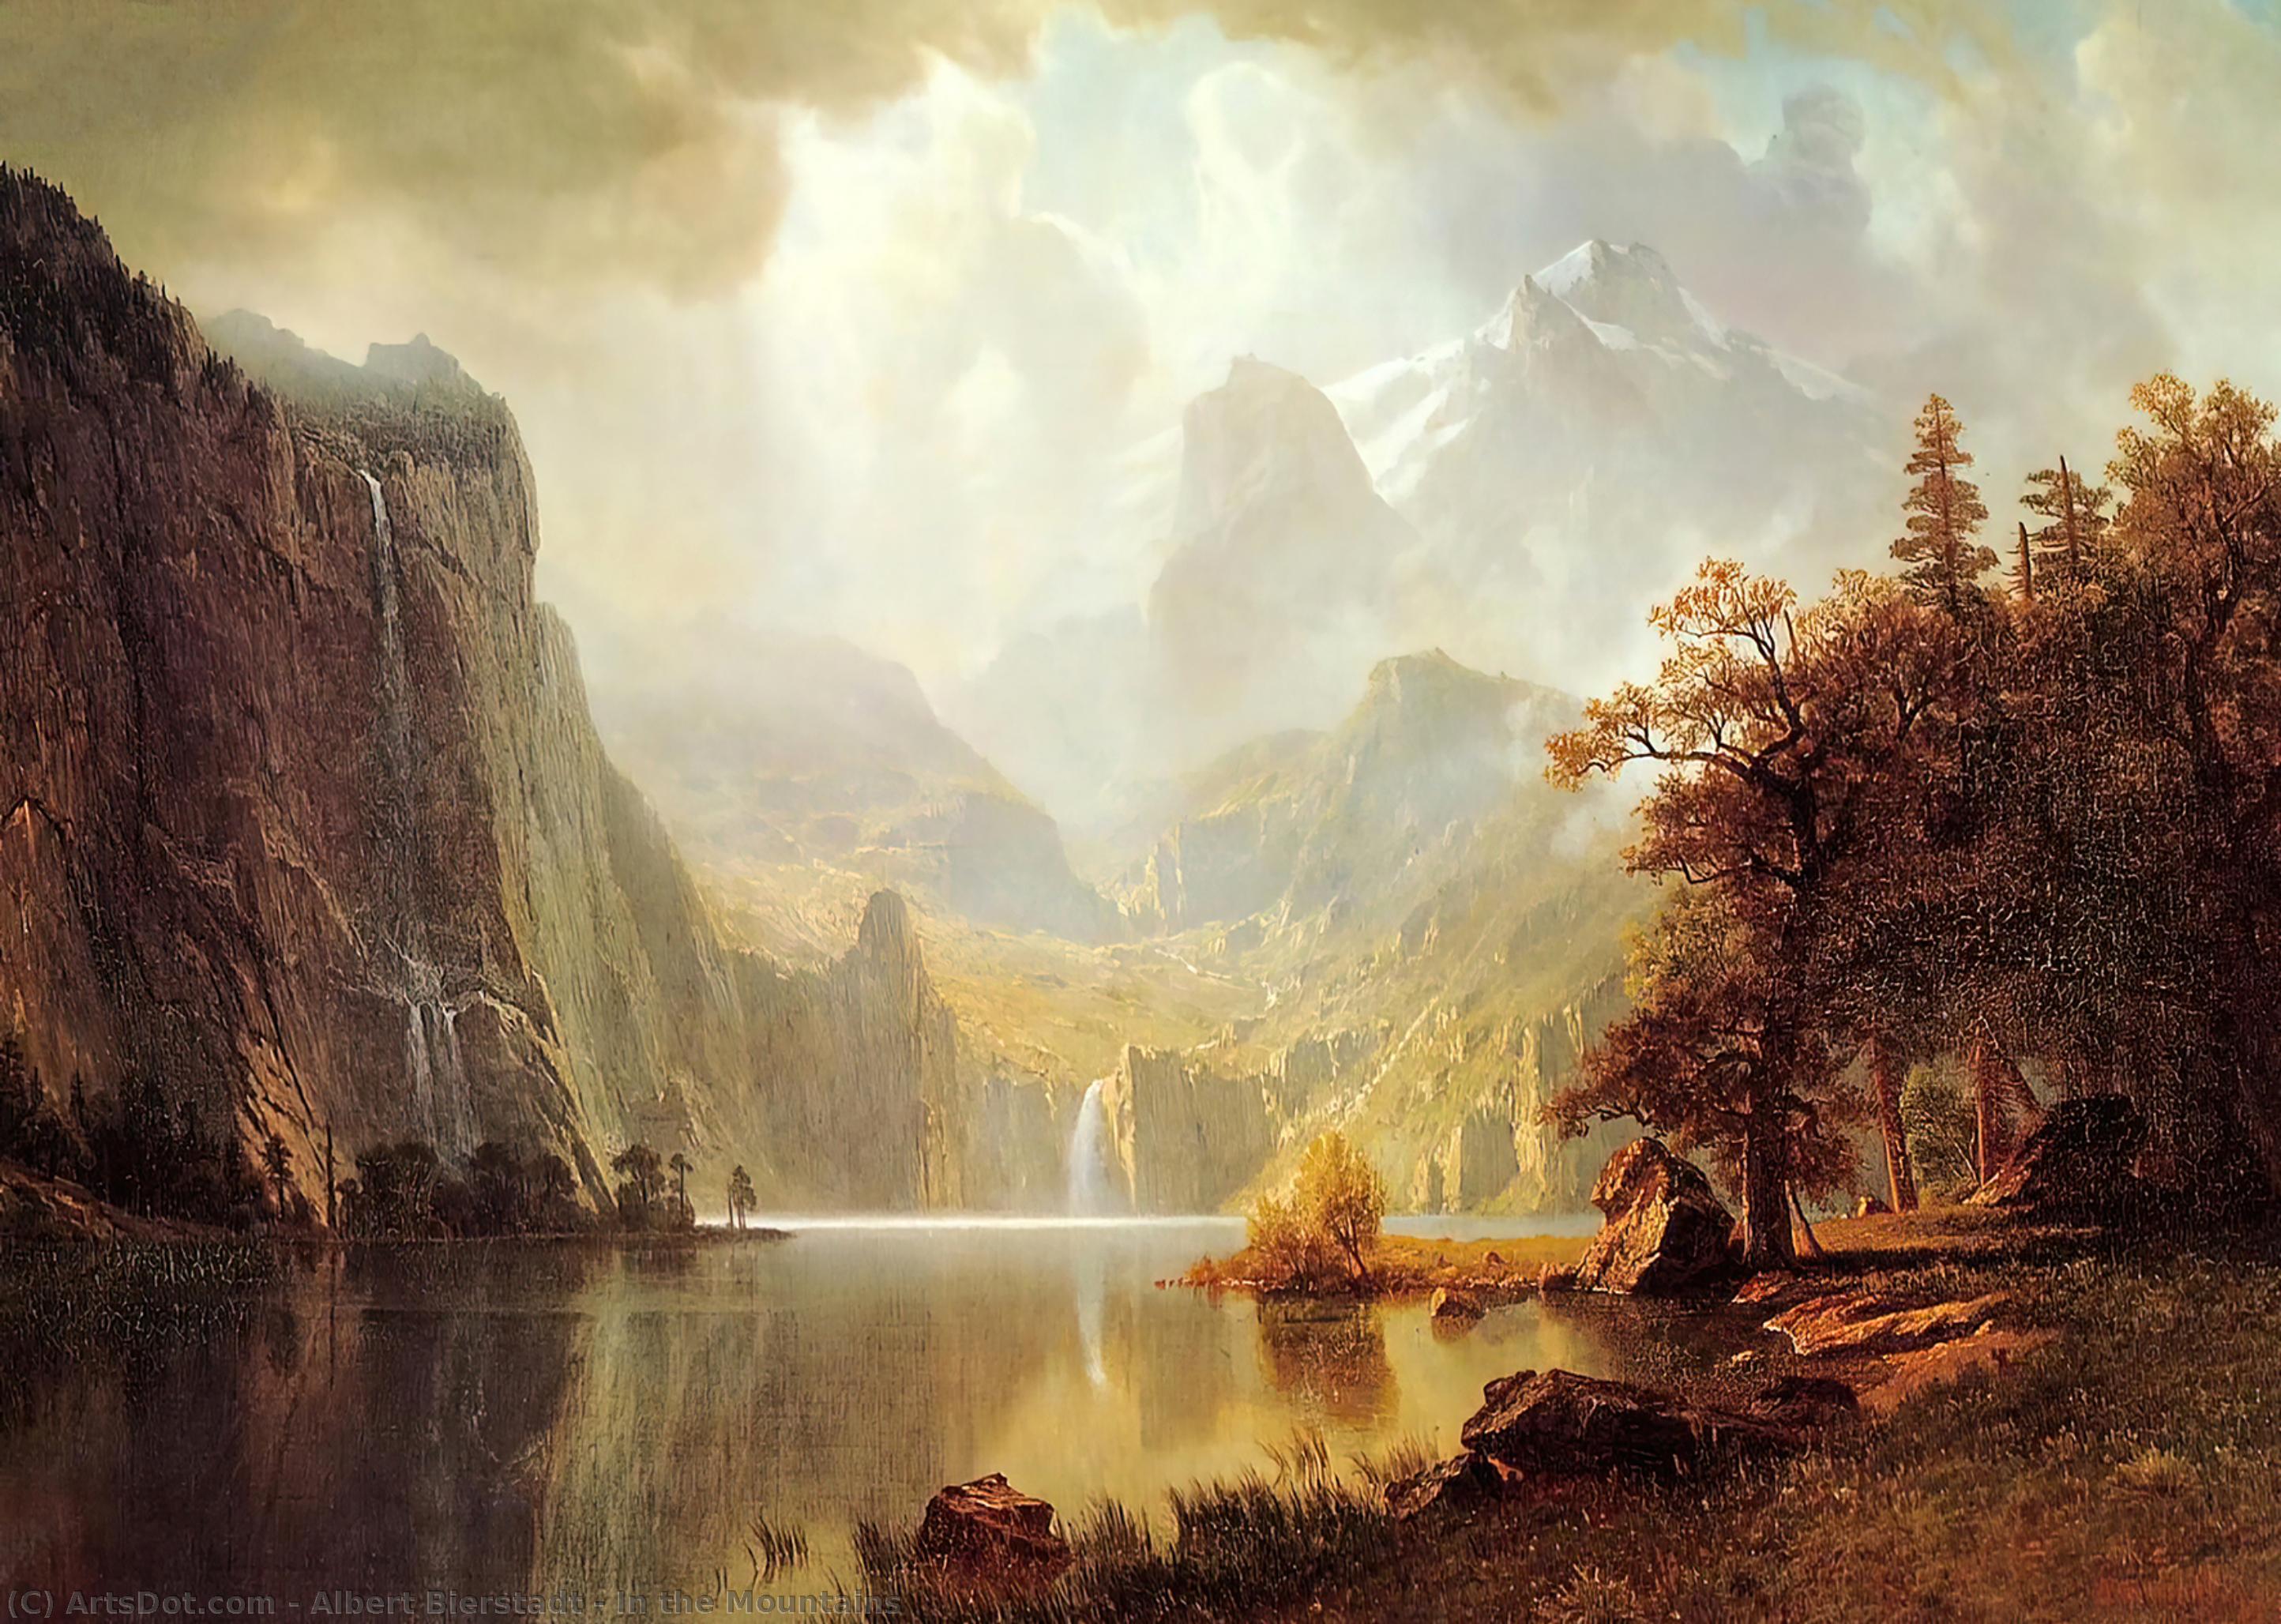 Лучшие картины. Альберт Бирштадт. Альберт Бирштадт (Albert Bierstadt; 1830-1902). Альберт Бирштадт картины. Пейзаж Albert Bierstadt.